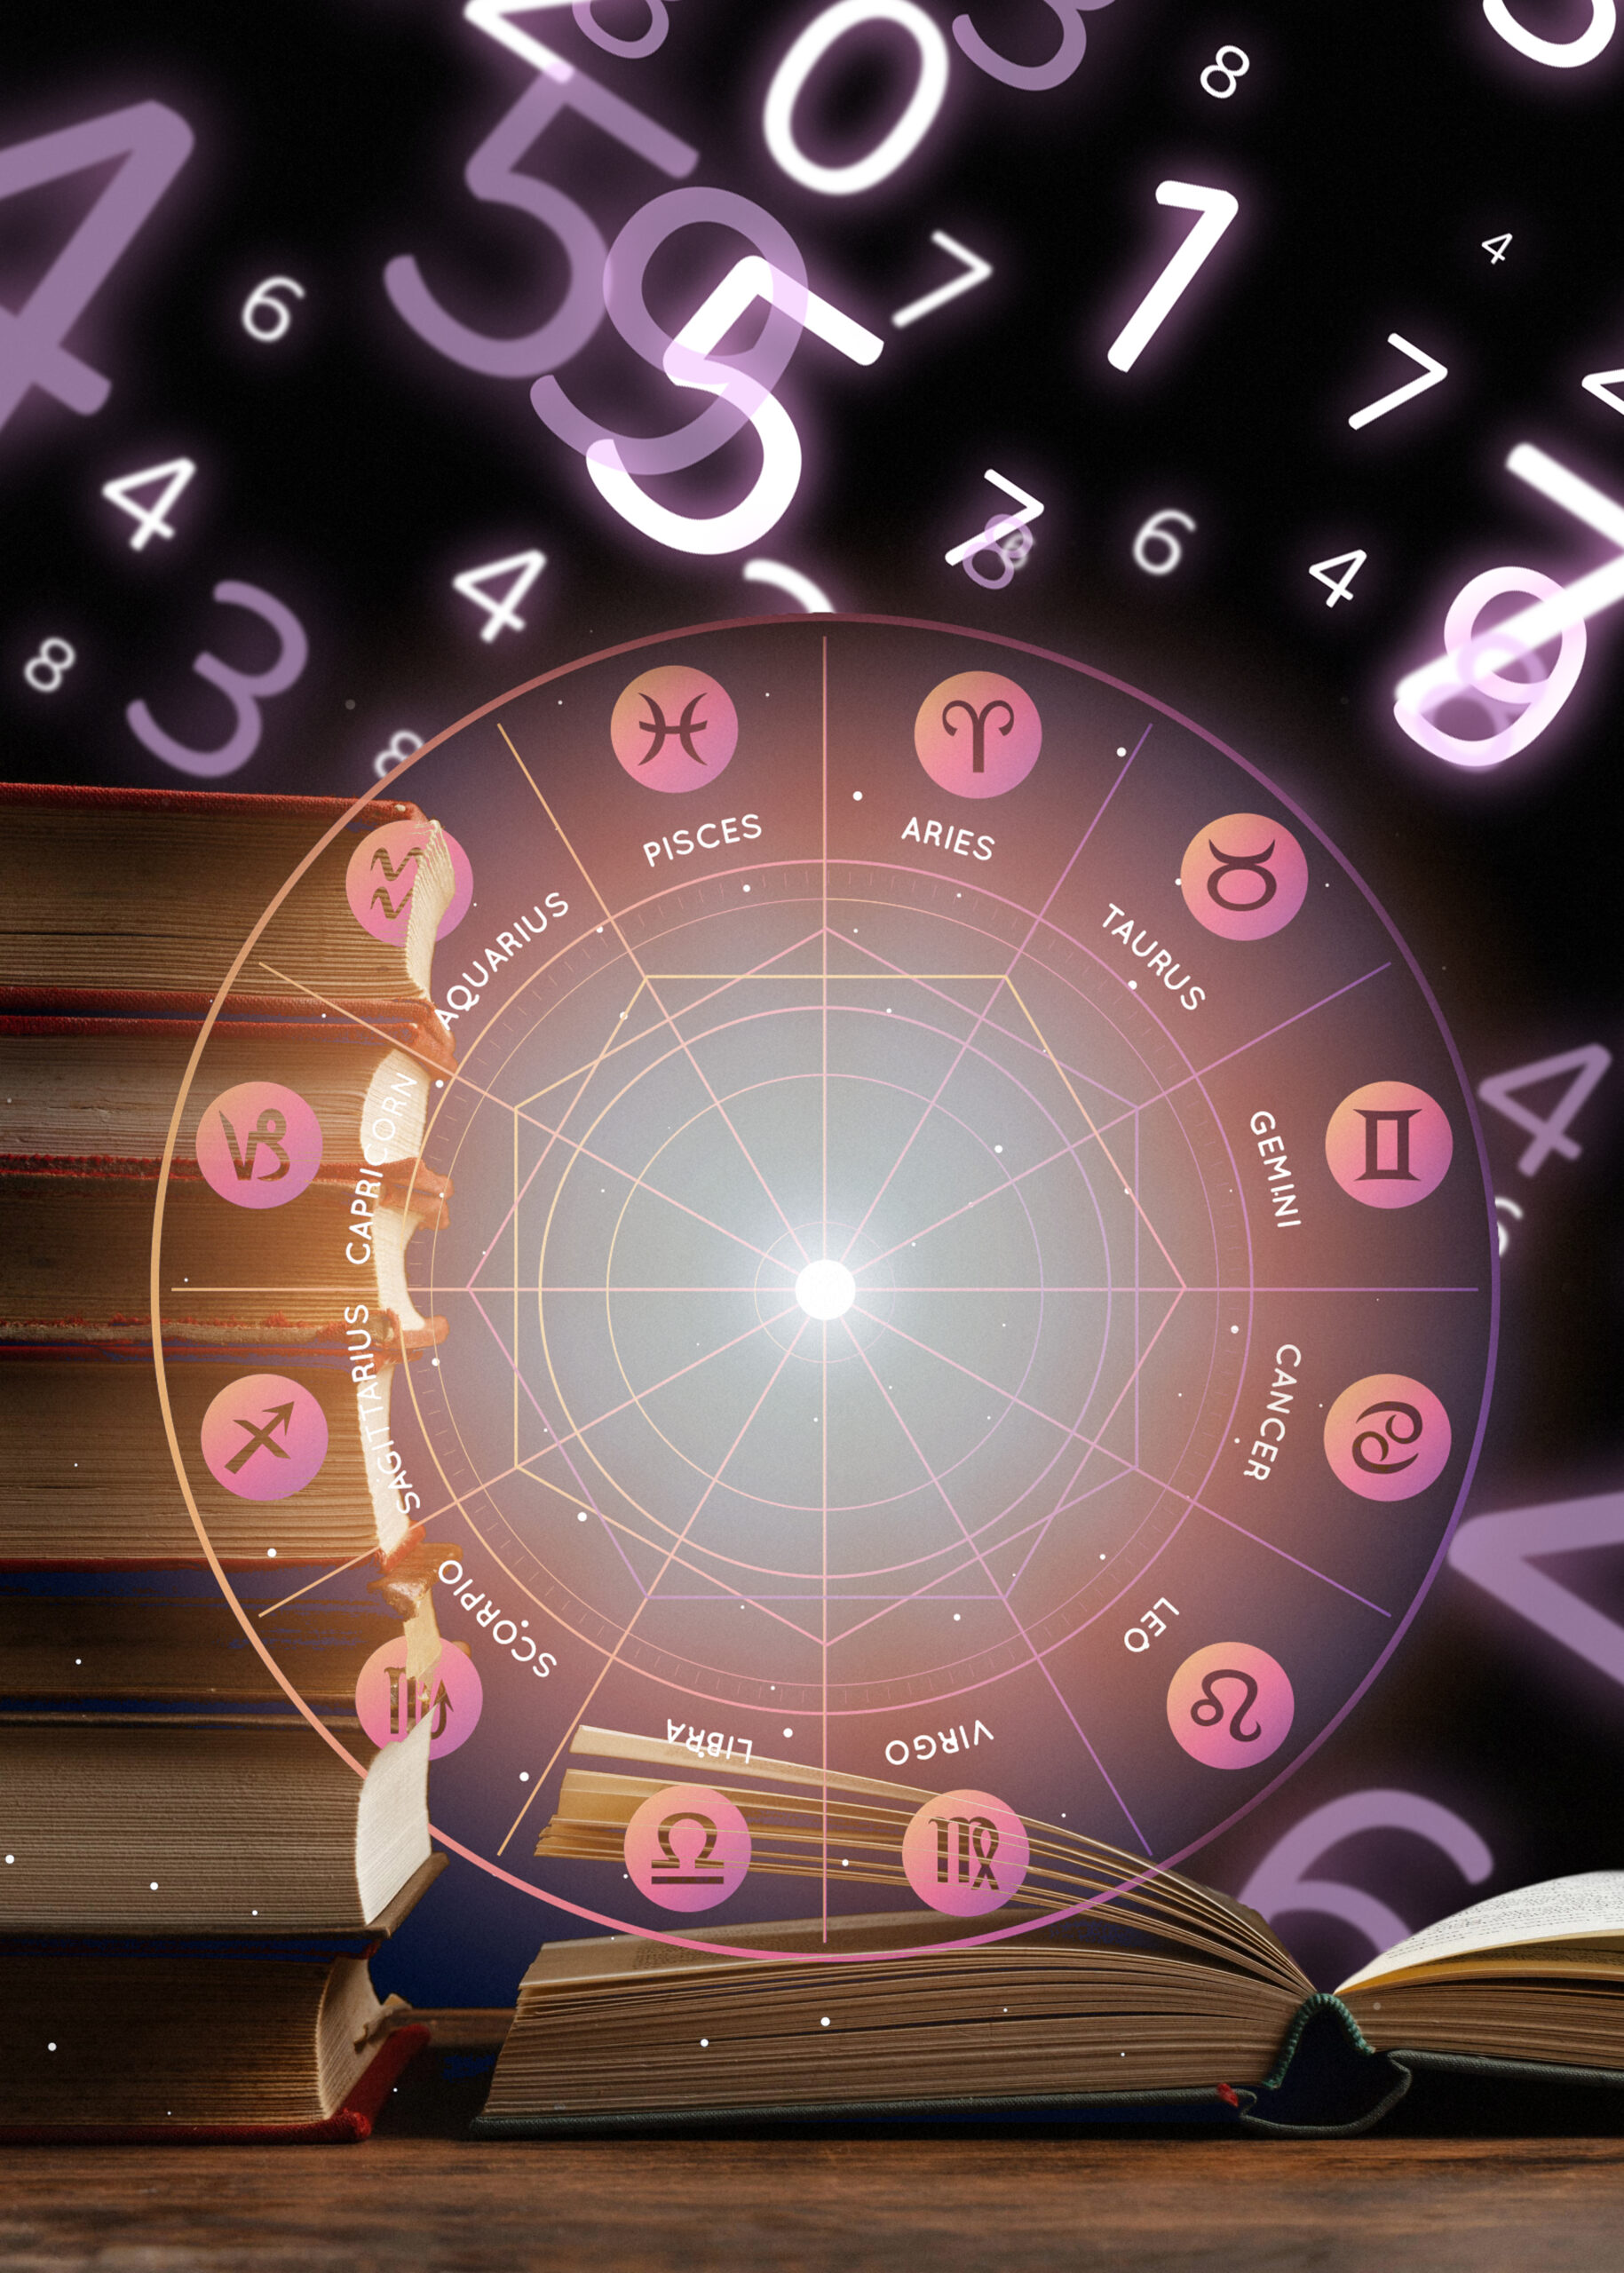 January 25 Zodiac is Aquarius - Full Horoscope Personality